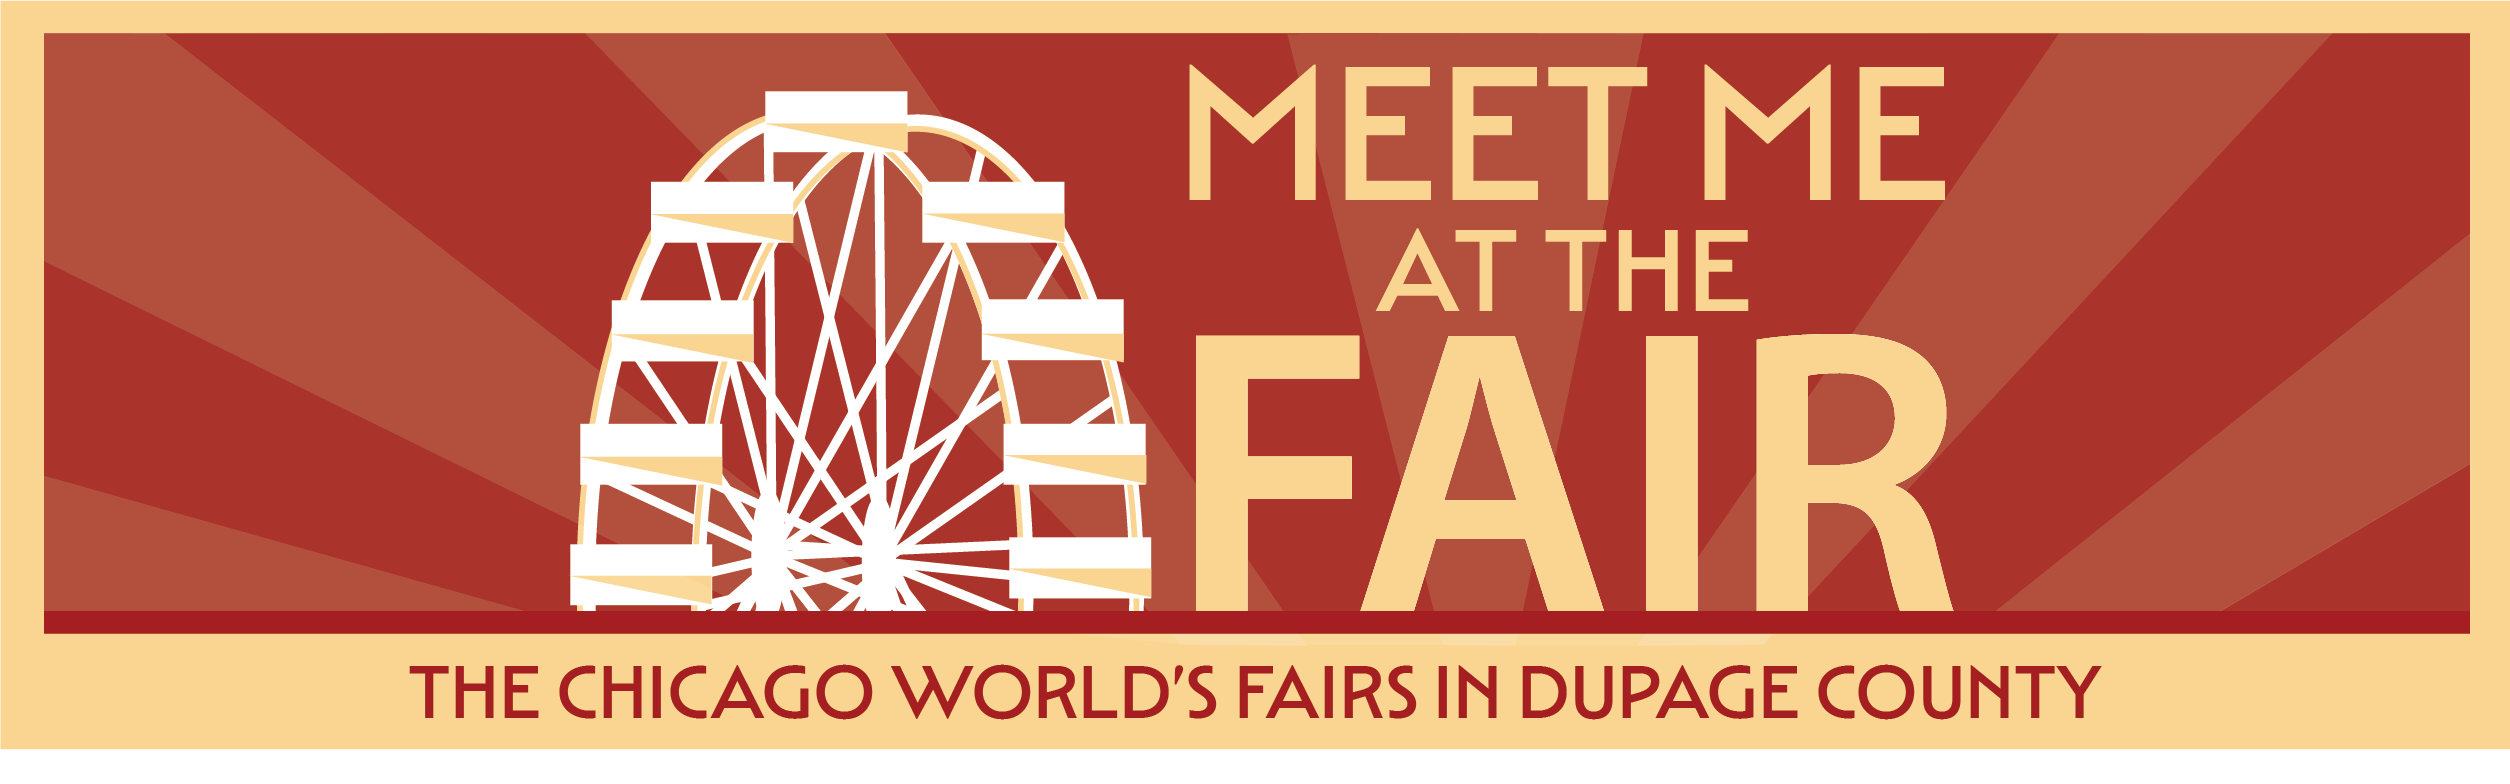 Meet Me at the Fair Exhibit logo